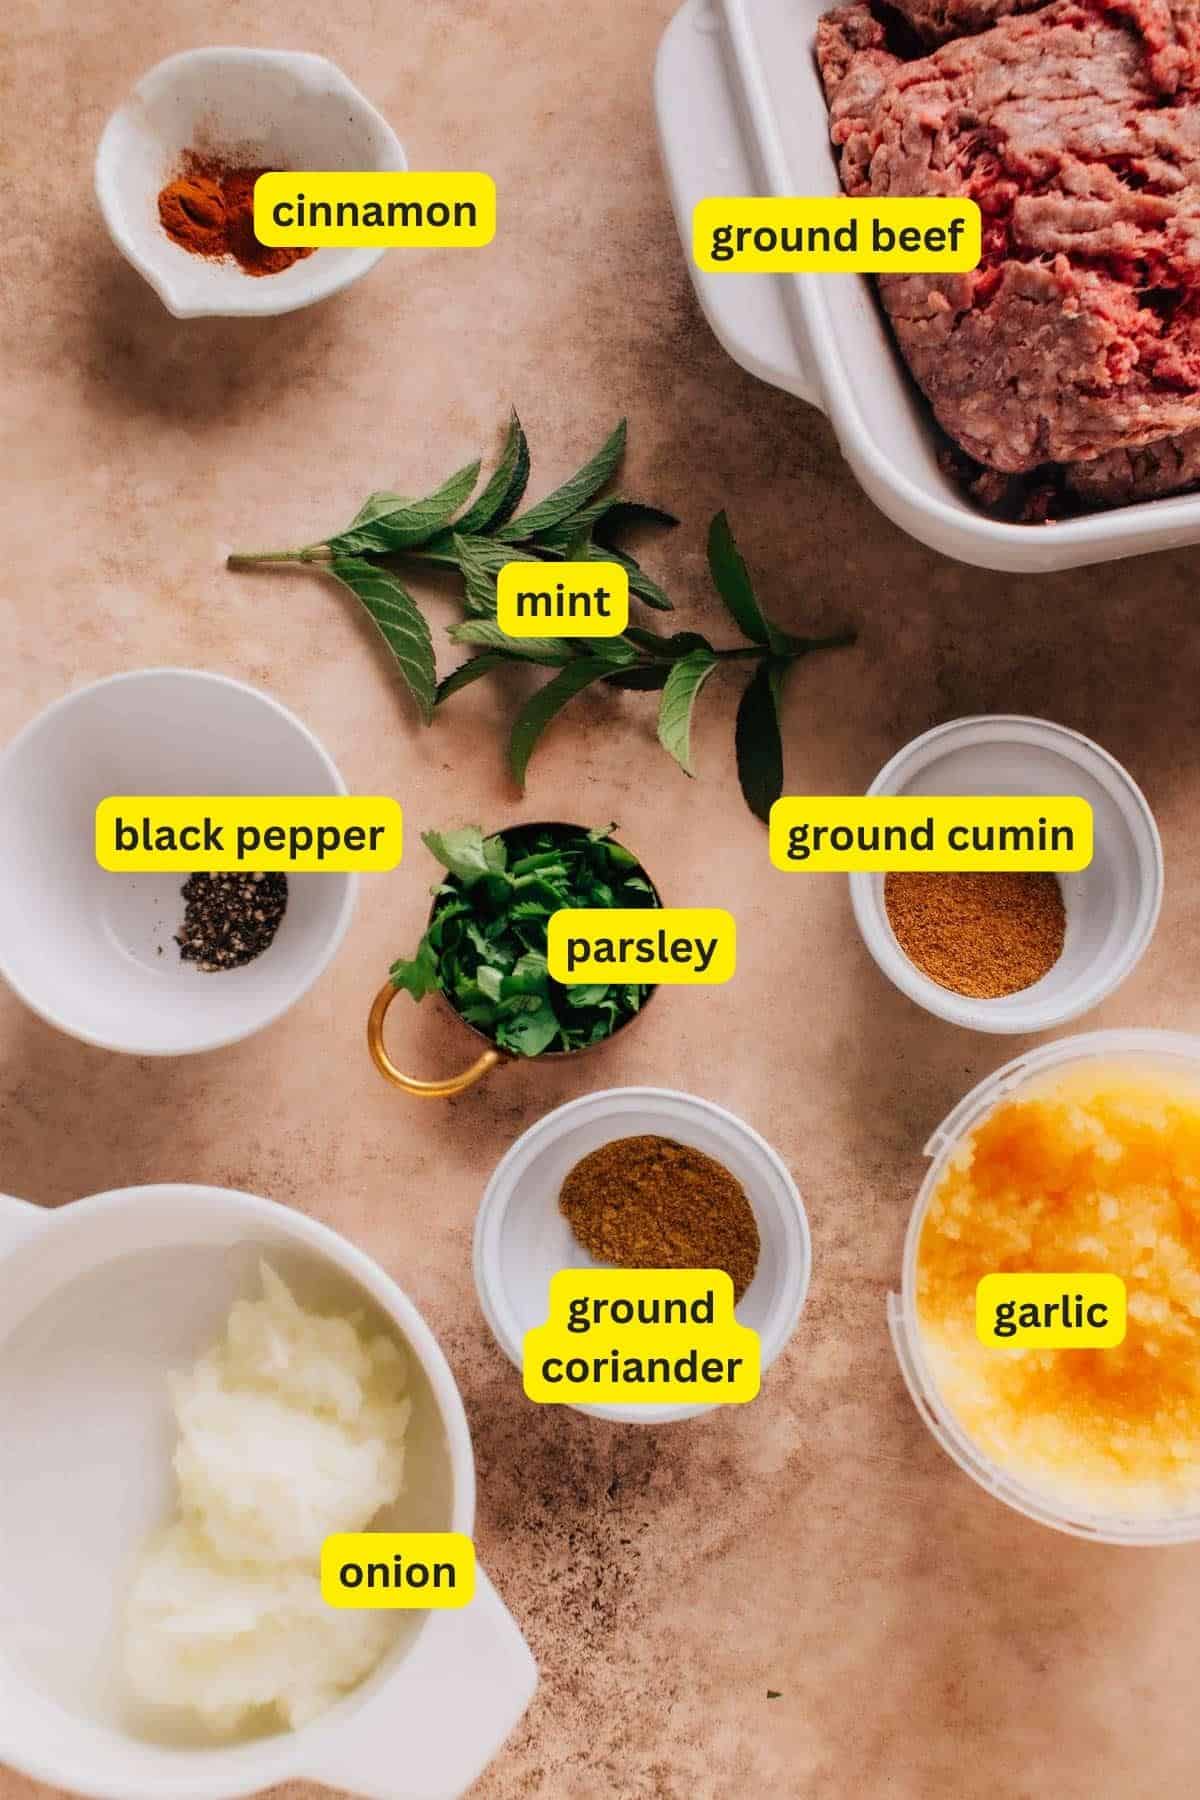 Ingredients for Beef Kafta Kabob arranged on a kitchen countertop: ground beef, cinnamon, mint, black pepper, parsley, ground coriander, ground cumin, garlic, and onion.